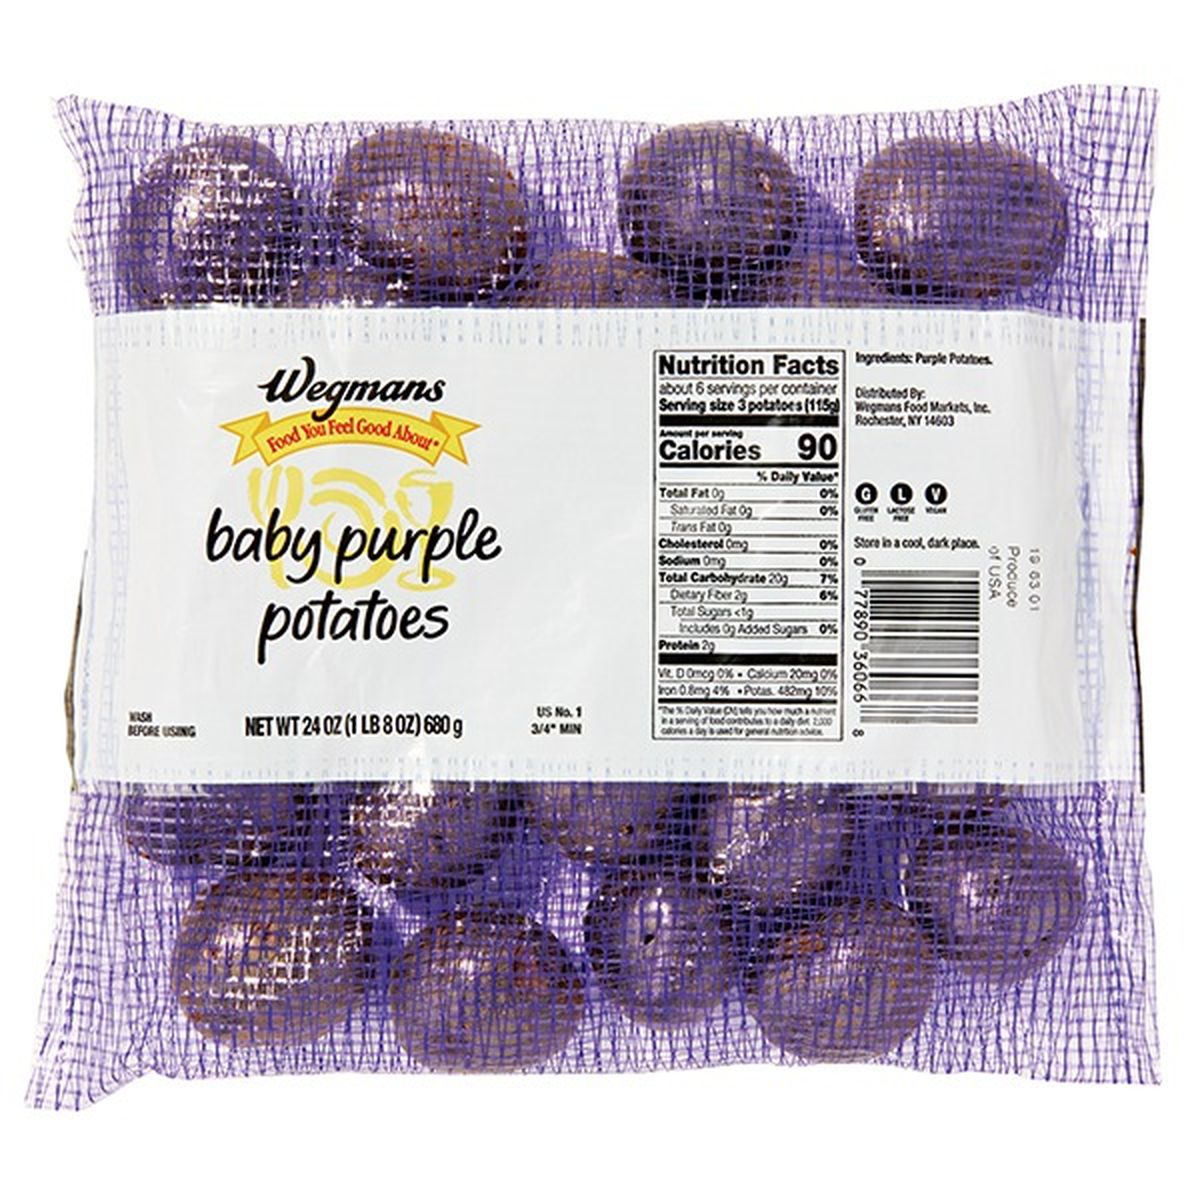 Calories in Wegmans Baby Purple Potatoes